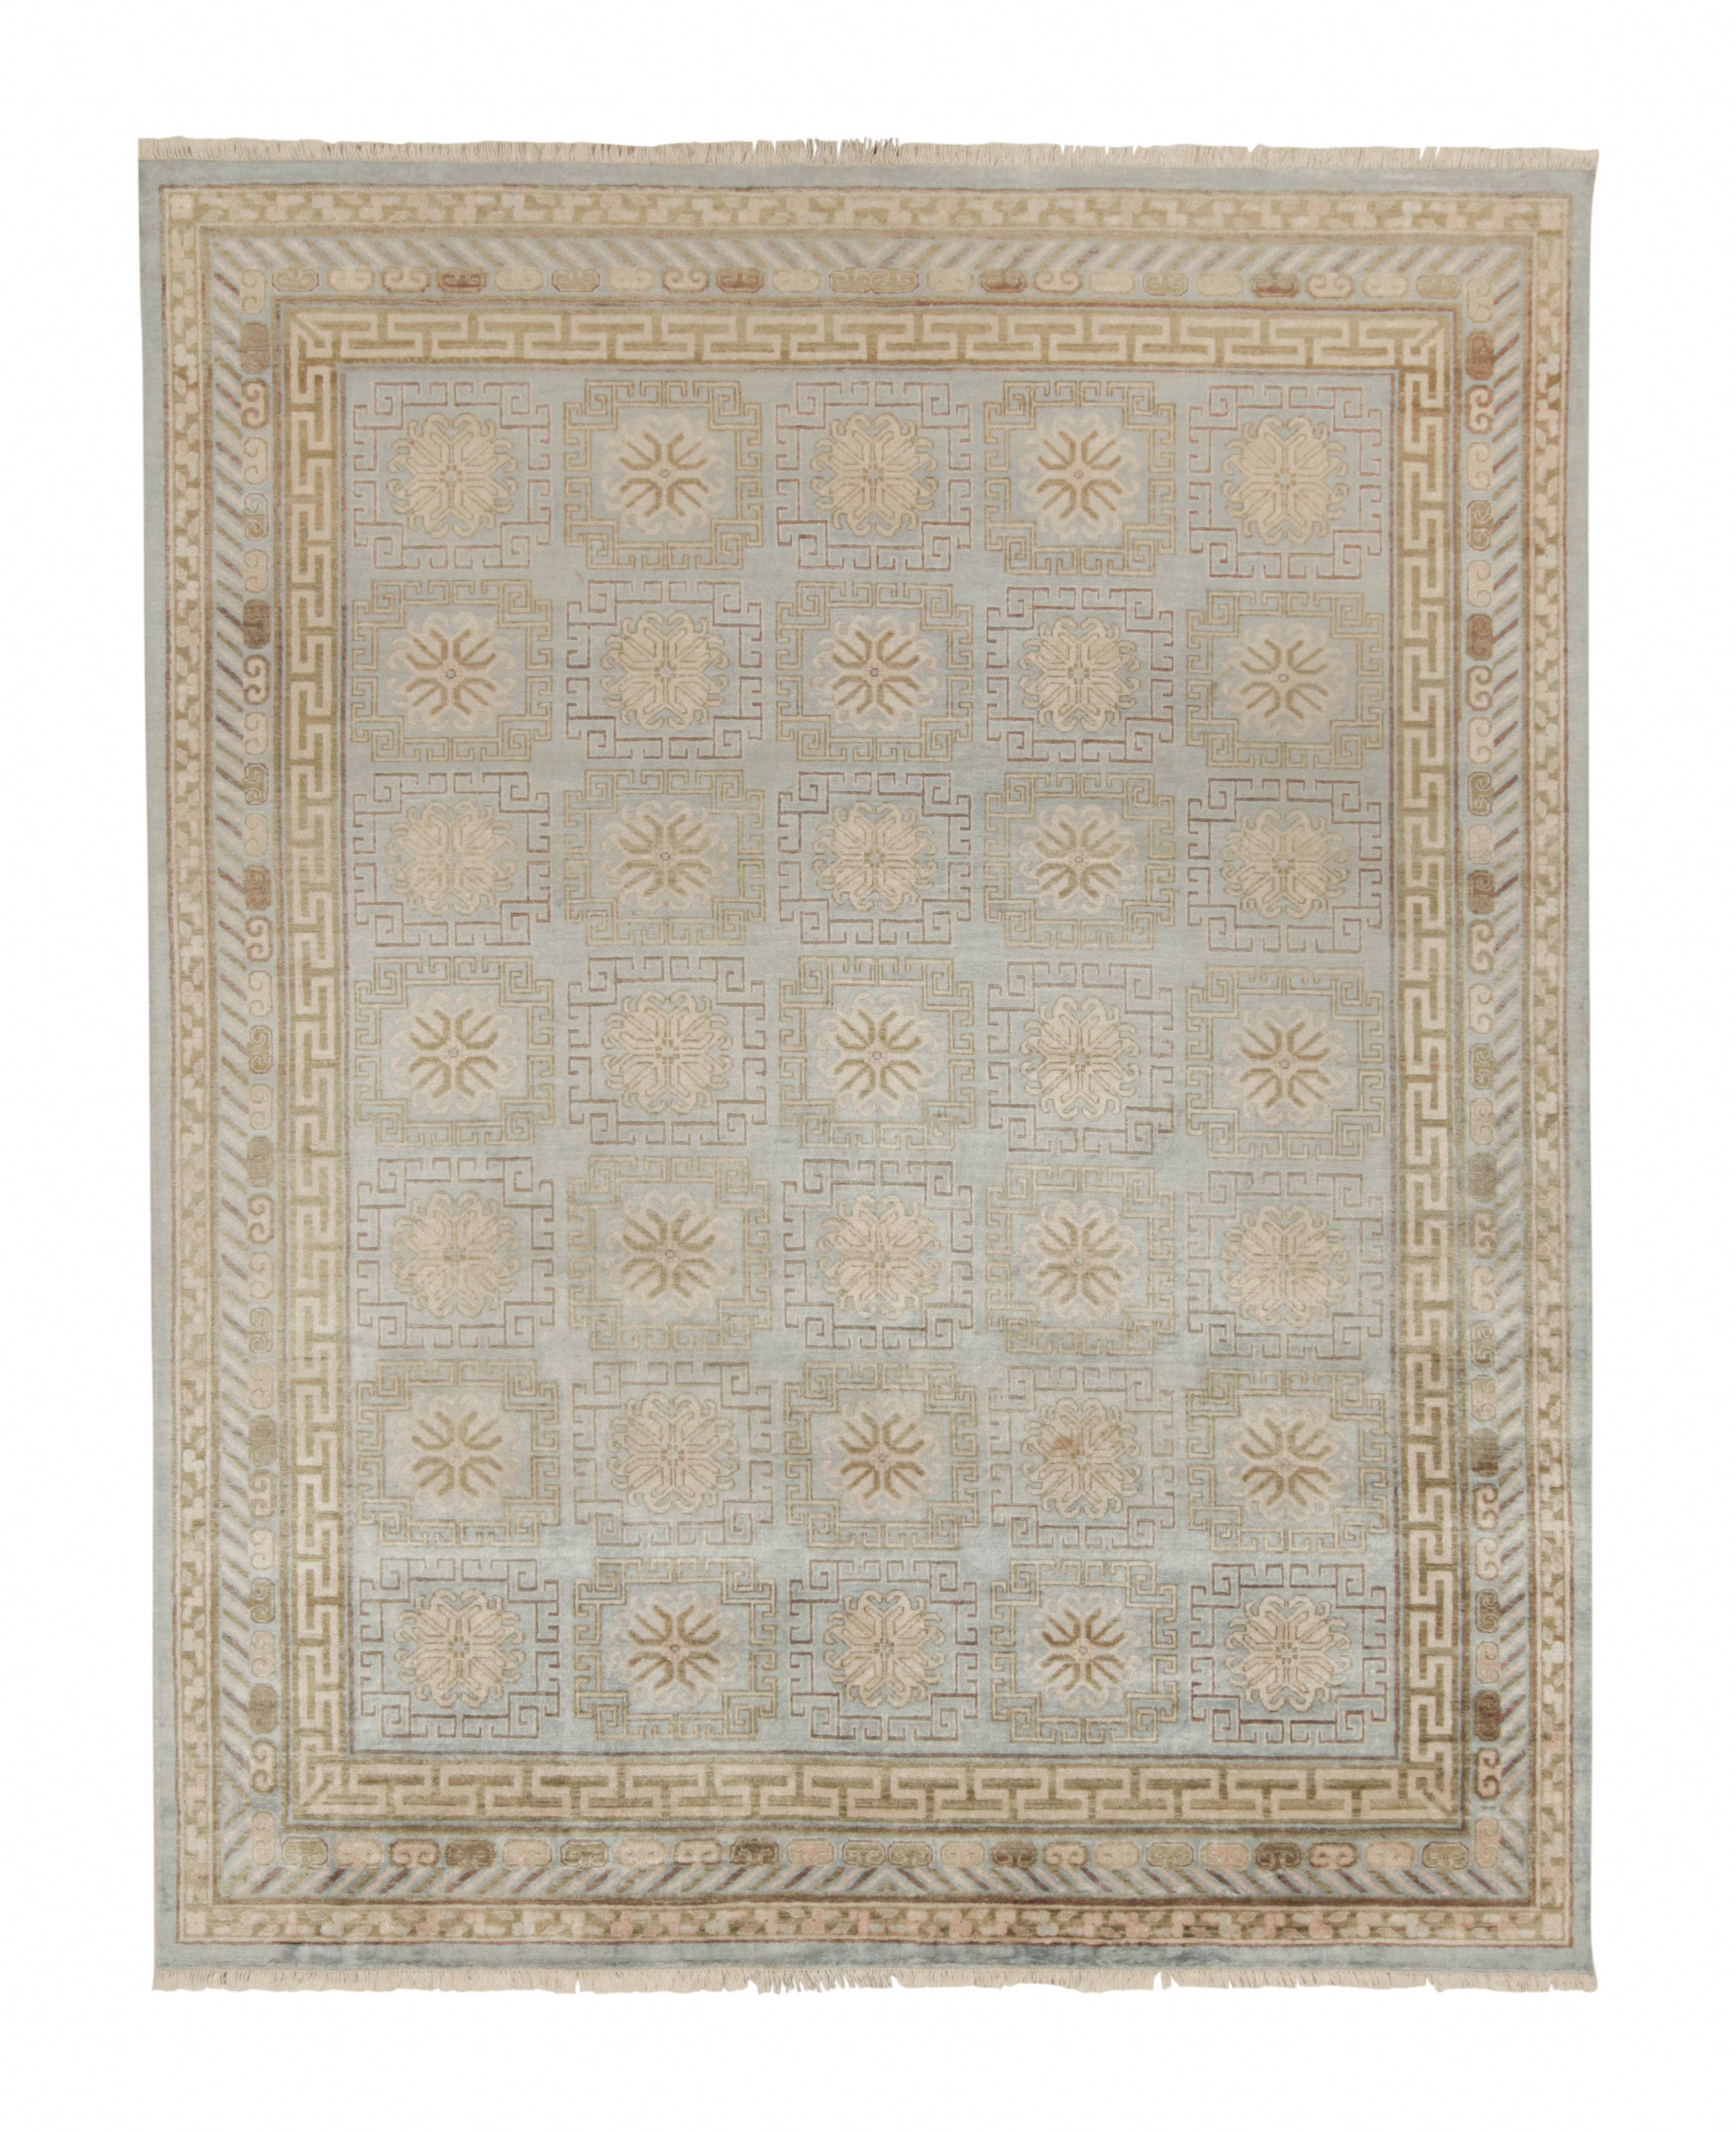 Teppich und Kelim-Teppich im Khotan-Stil mit blauen und beige-braunen Medaillonmustern